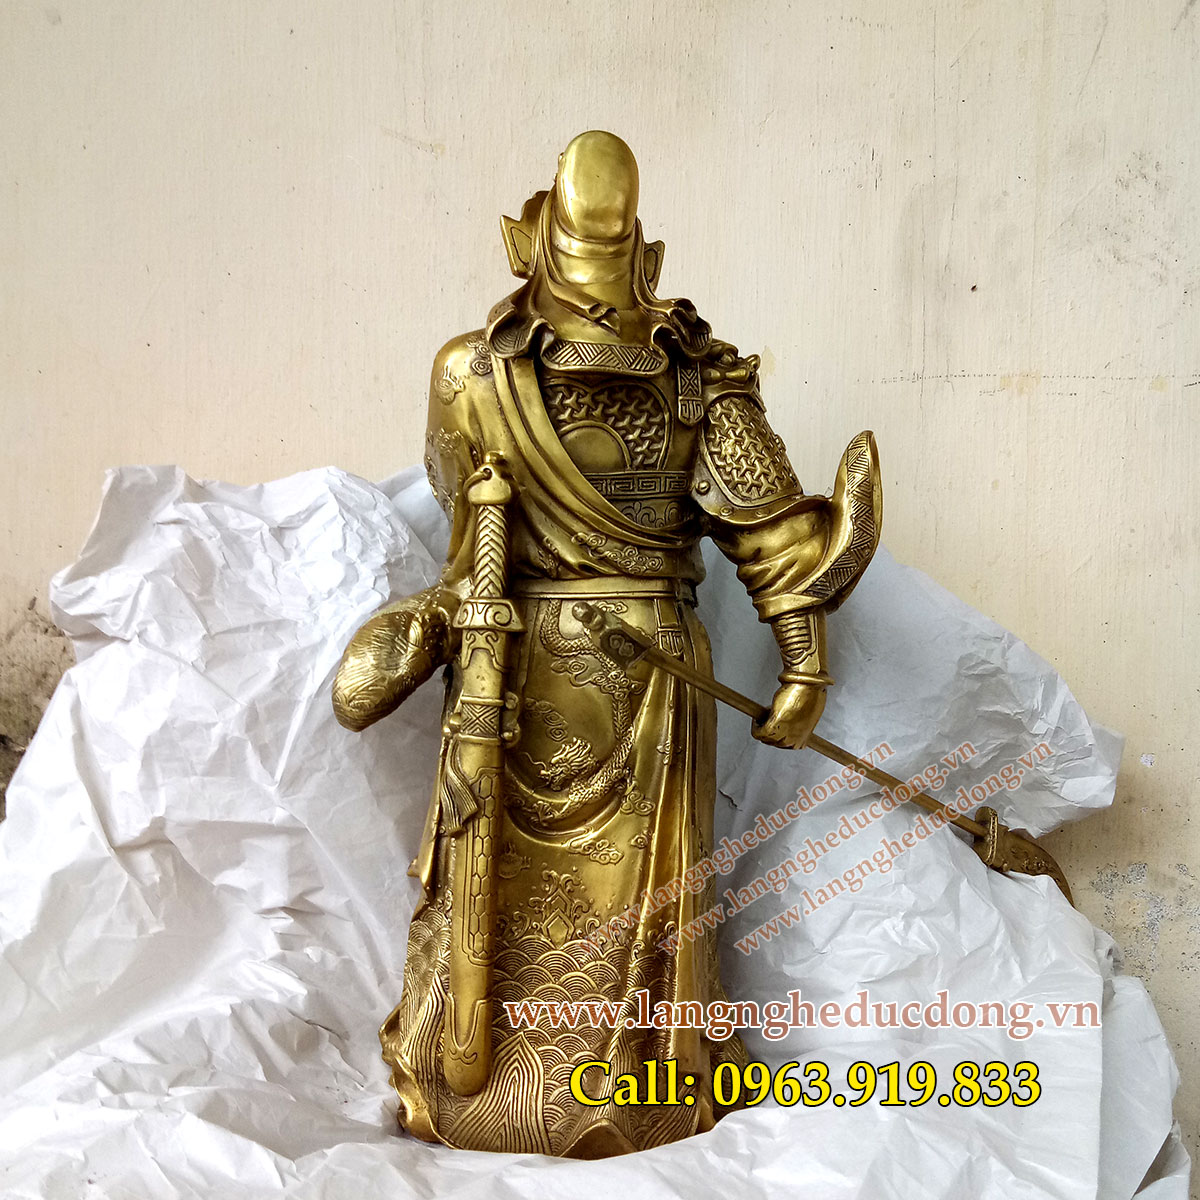 langngheducdong.vn - tượng quan công cầm đao, quan công bằng đồng vàng, quan công cao 50cm